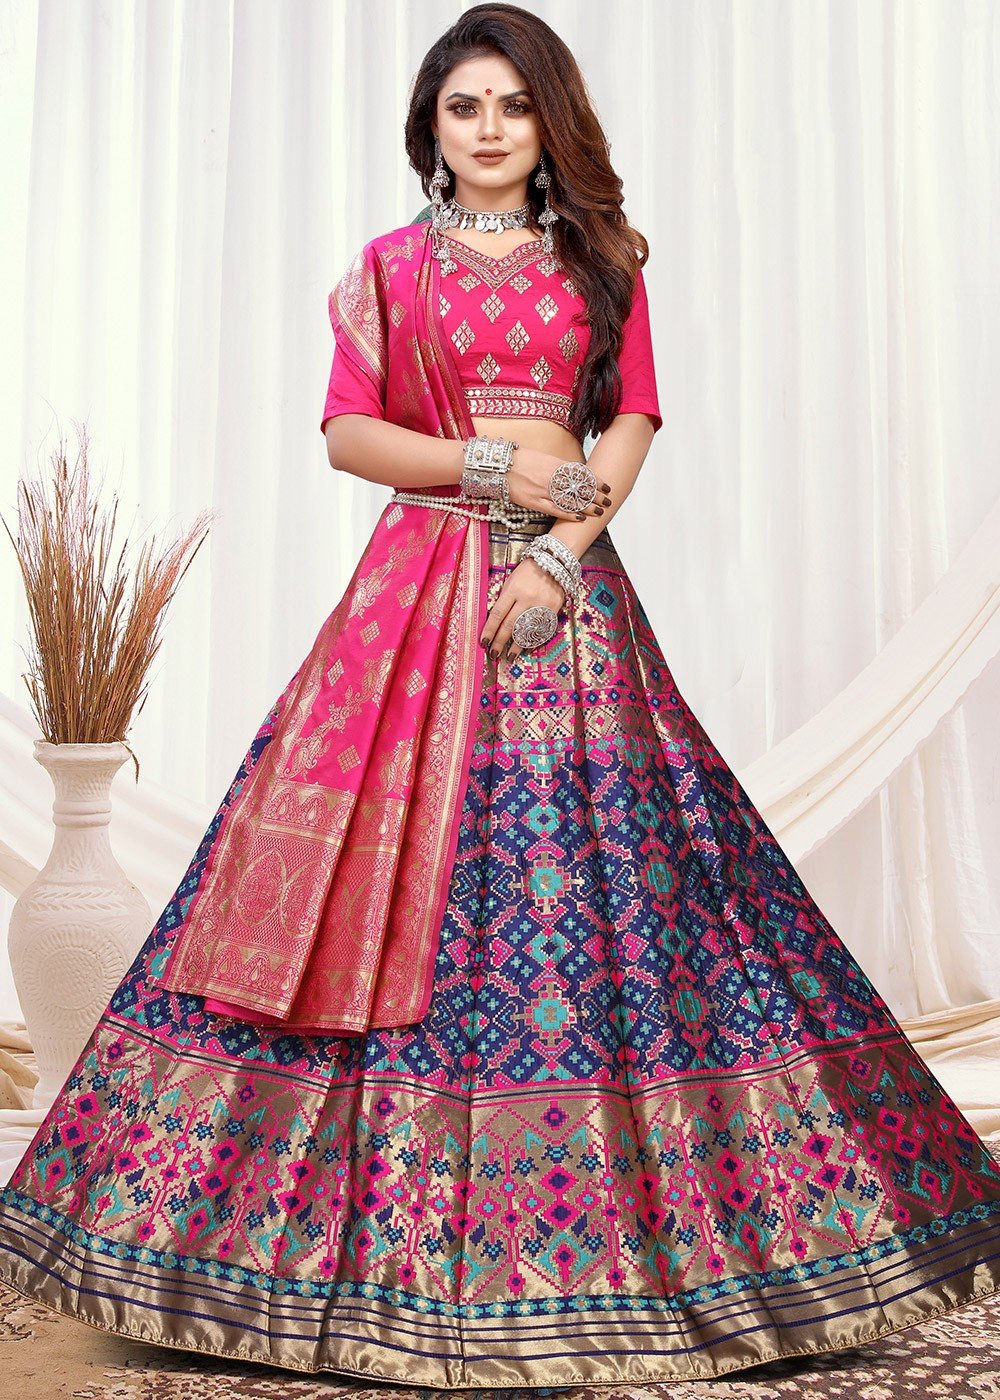 Silk Wedding Ethnic Festive Traditional Bollywood Party Wear Lehenga Choli  Pink | eBay